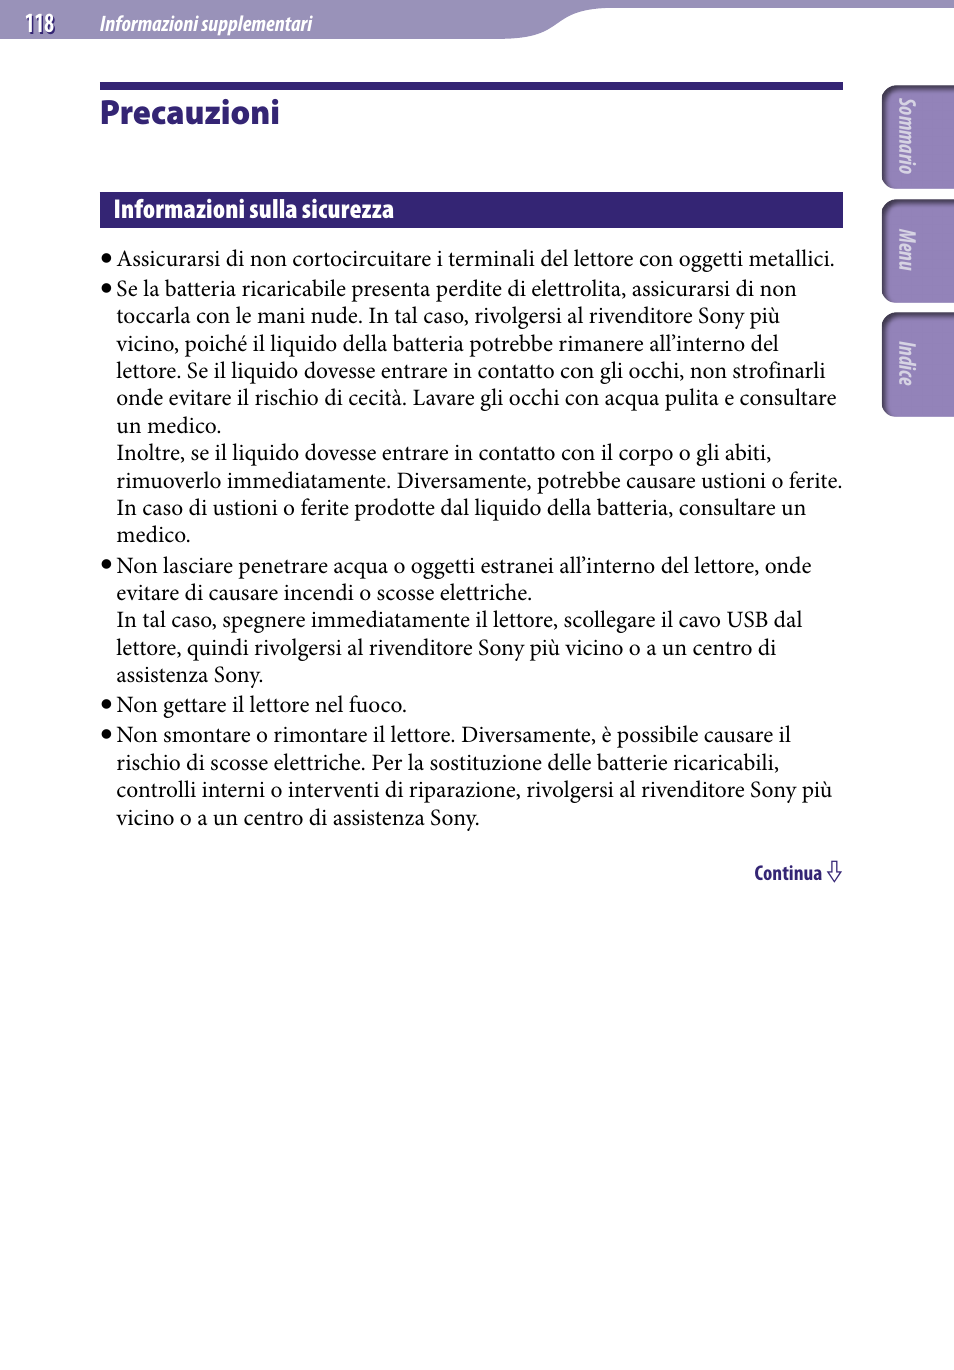 Precauzioni, Informazioni sulla sicurezza | Sony NWZ-S515 Manuale d'uso | Pagina 118 / 133